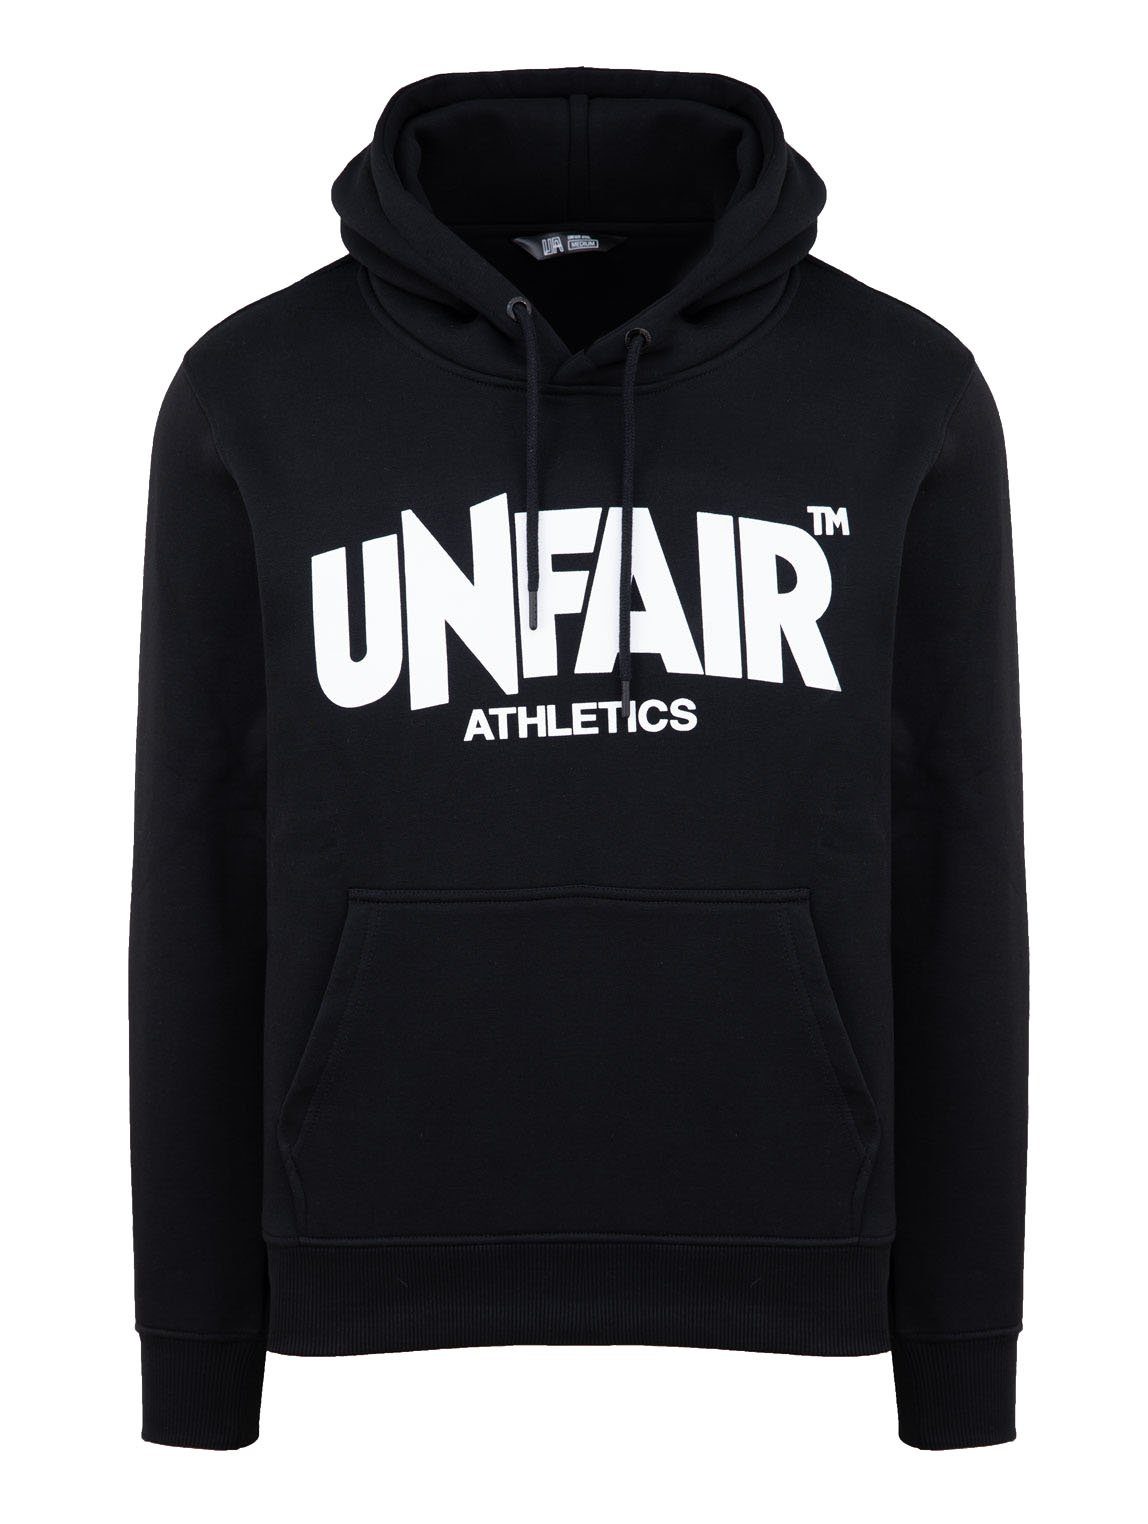 Unfair Athletics Sweatshirt online kaufen | OTTO